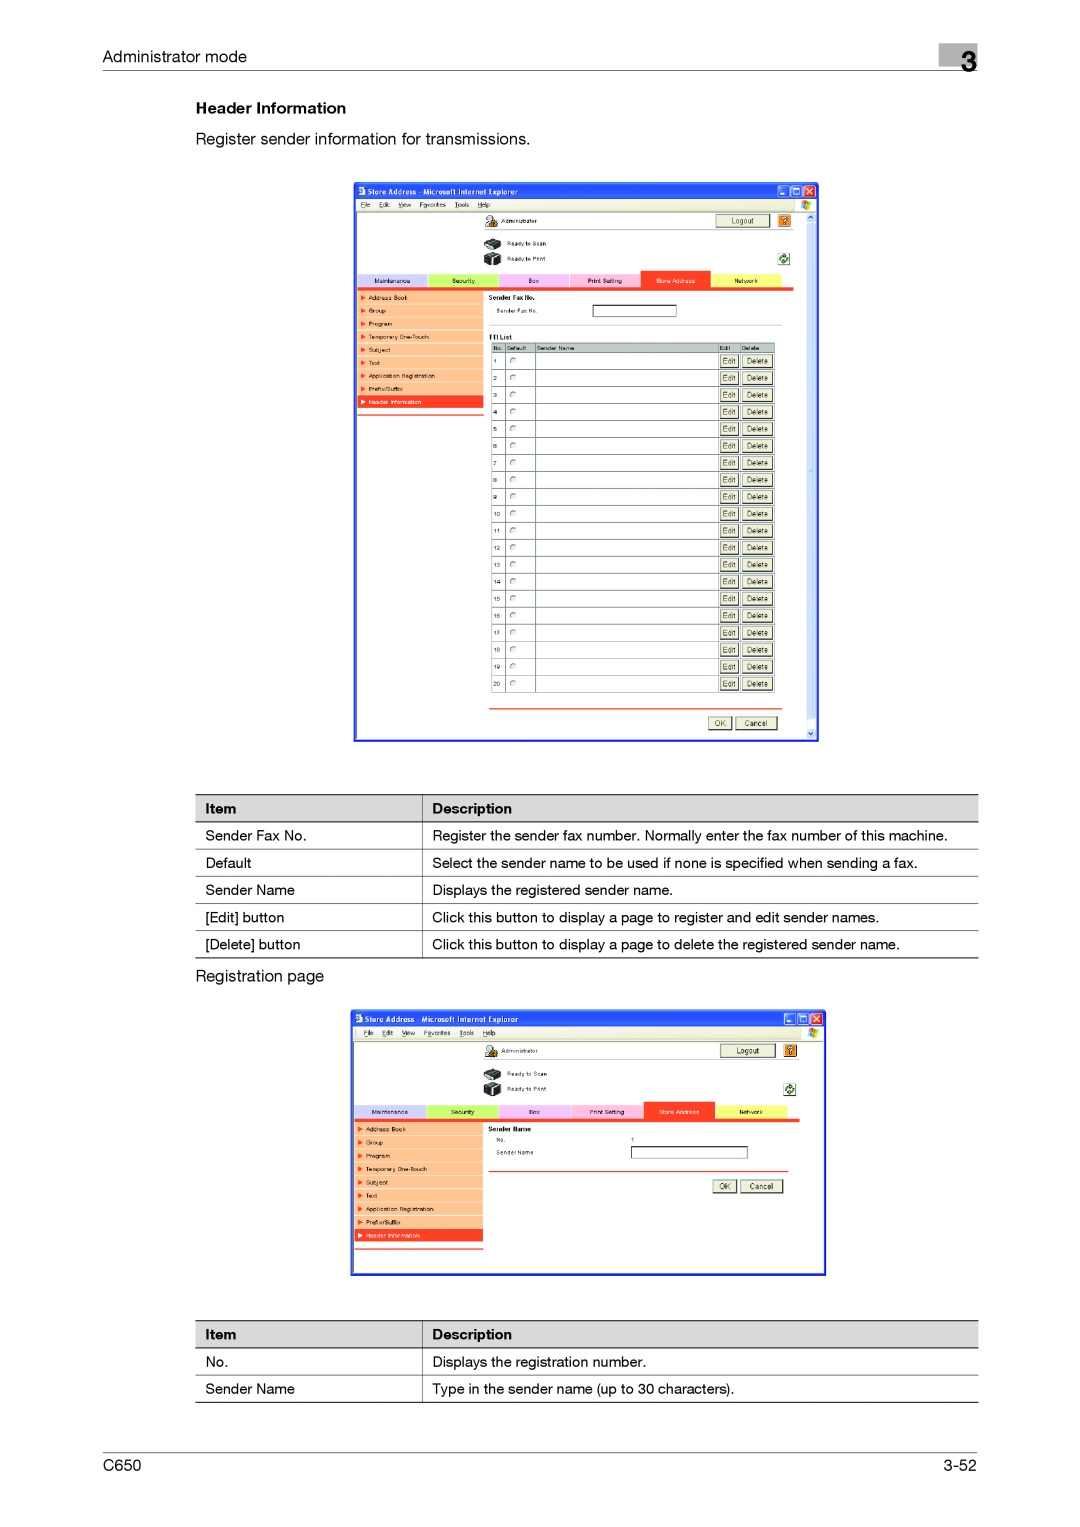 Konica Minolta C650 manual Register sender information for transmissions, Administrator mode, Registration page, 3-52 